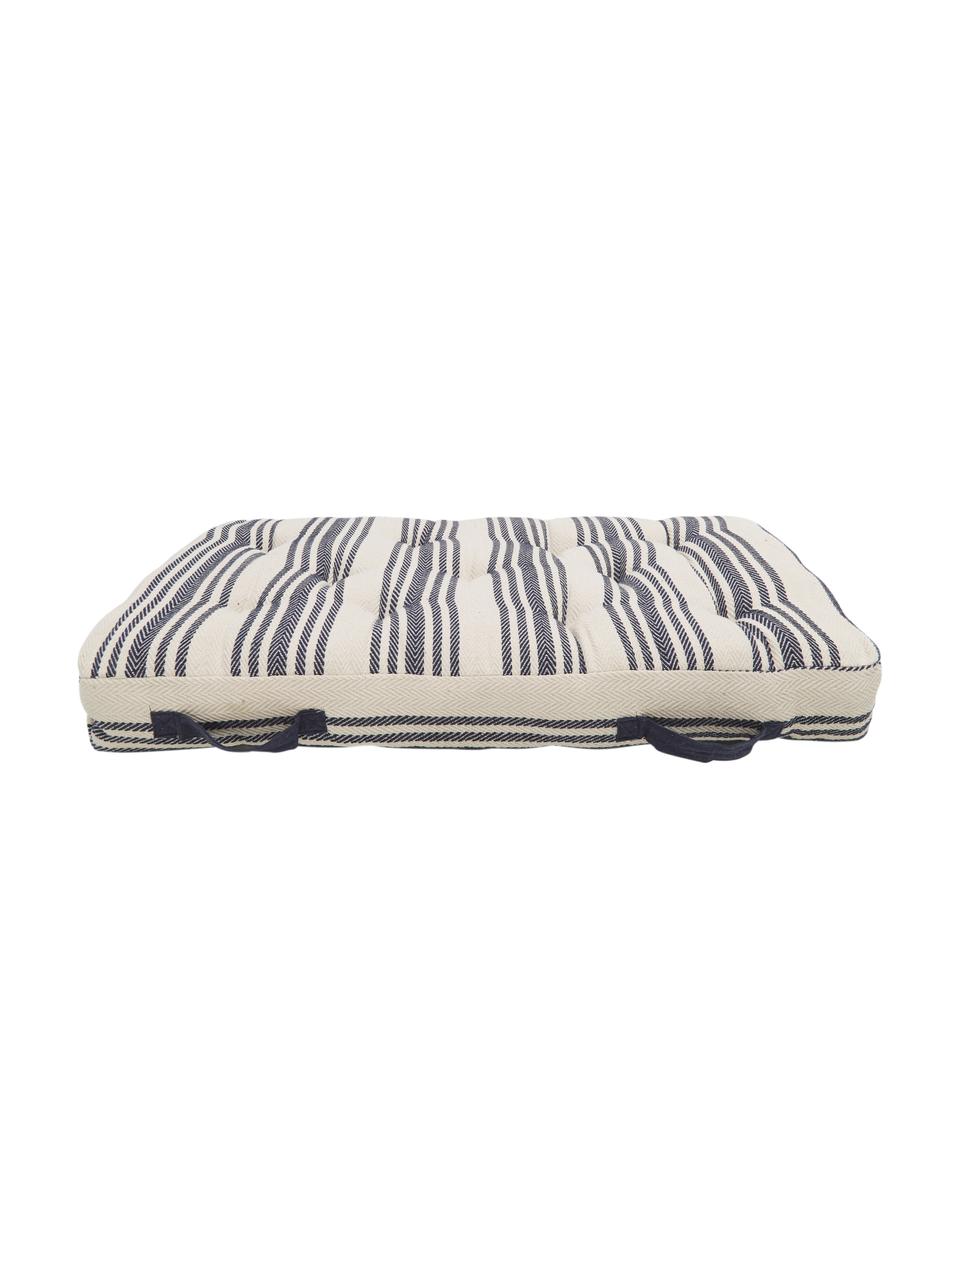 Duża poduszka podłogowa Puket, Ciemny niebieski, biały, S 60 x D 120 cm